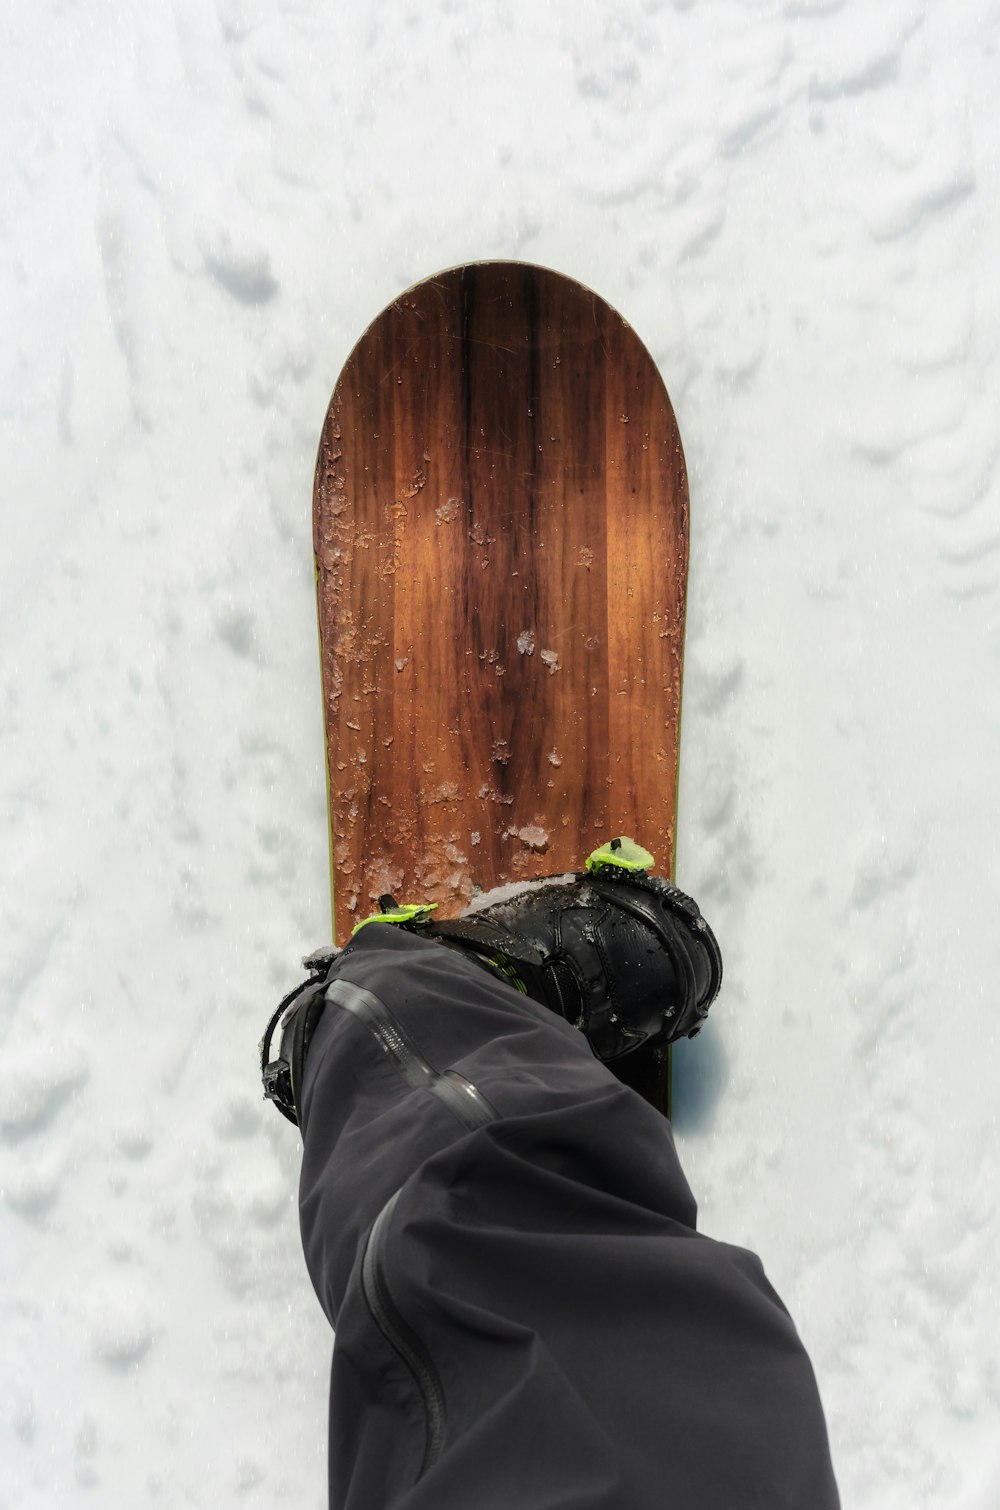 スノーボードの隣の雪に埋もれた人の足